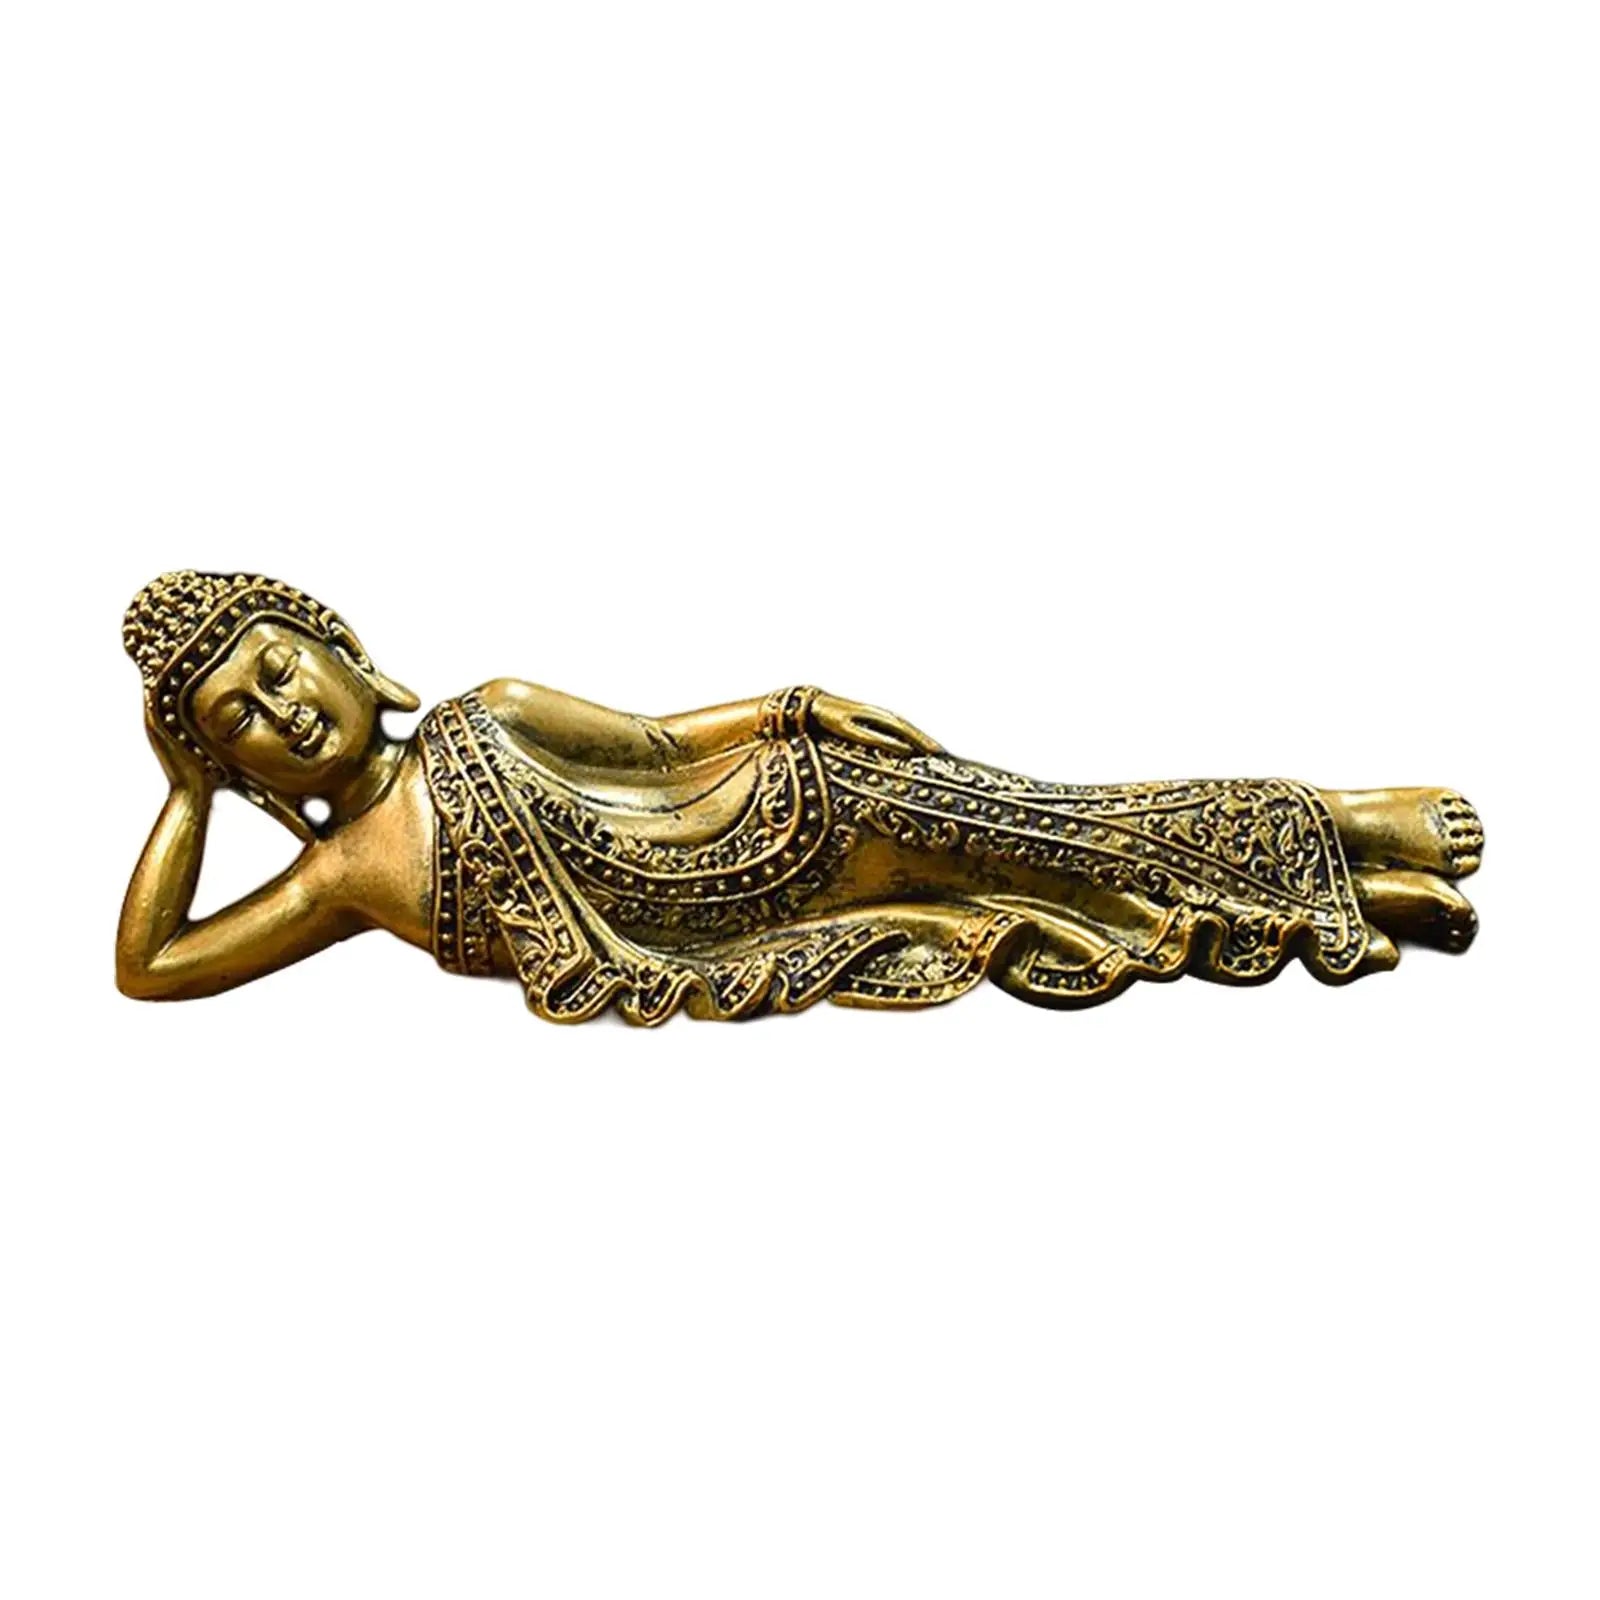 Estatua de Buda reclinado en resina.